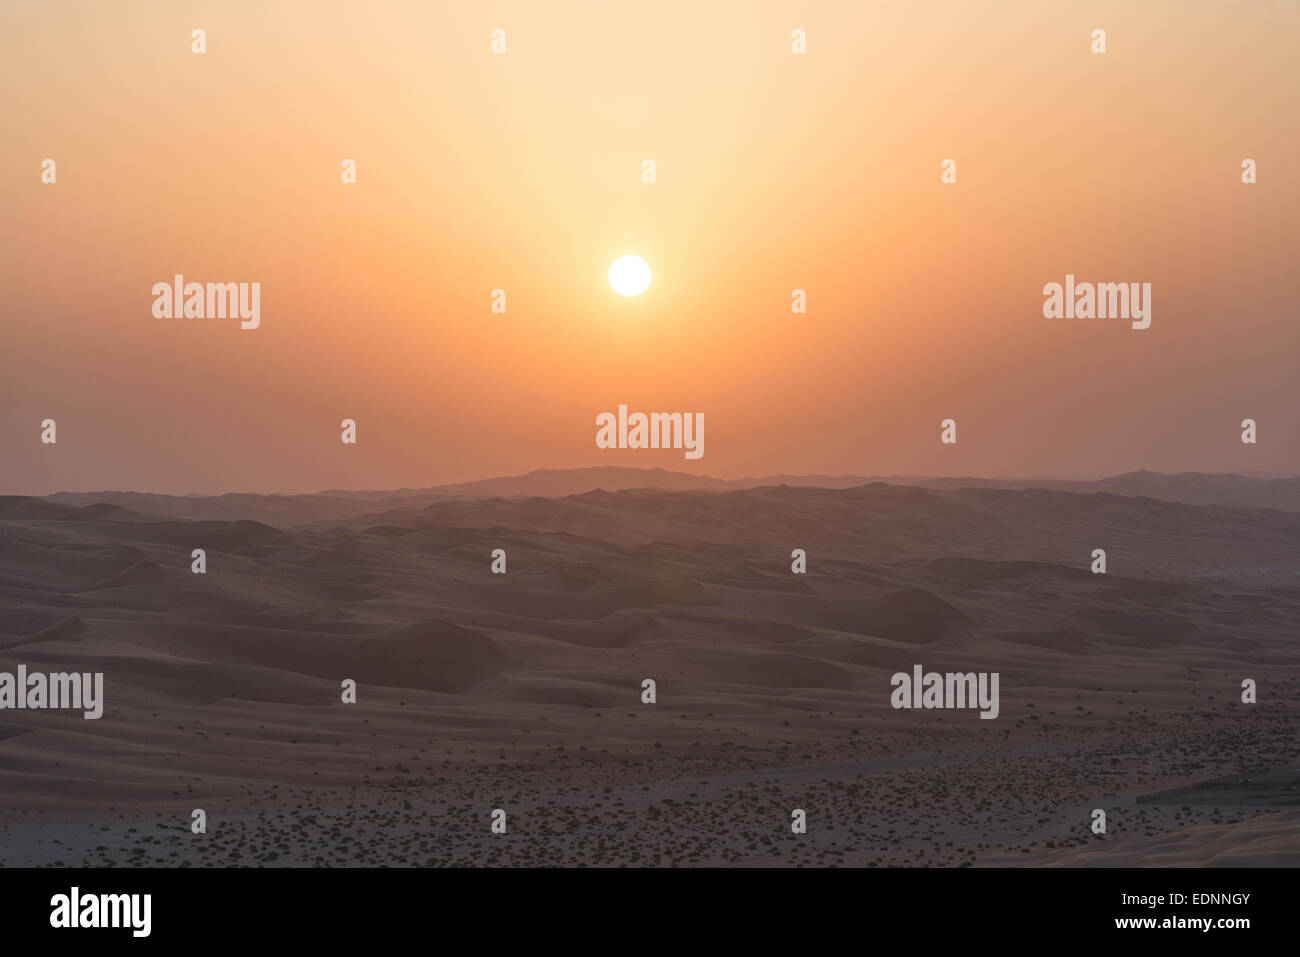 Sunset in desert, Stock Photo